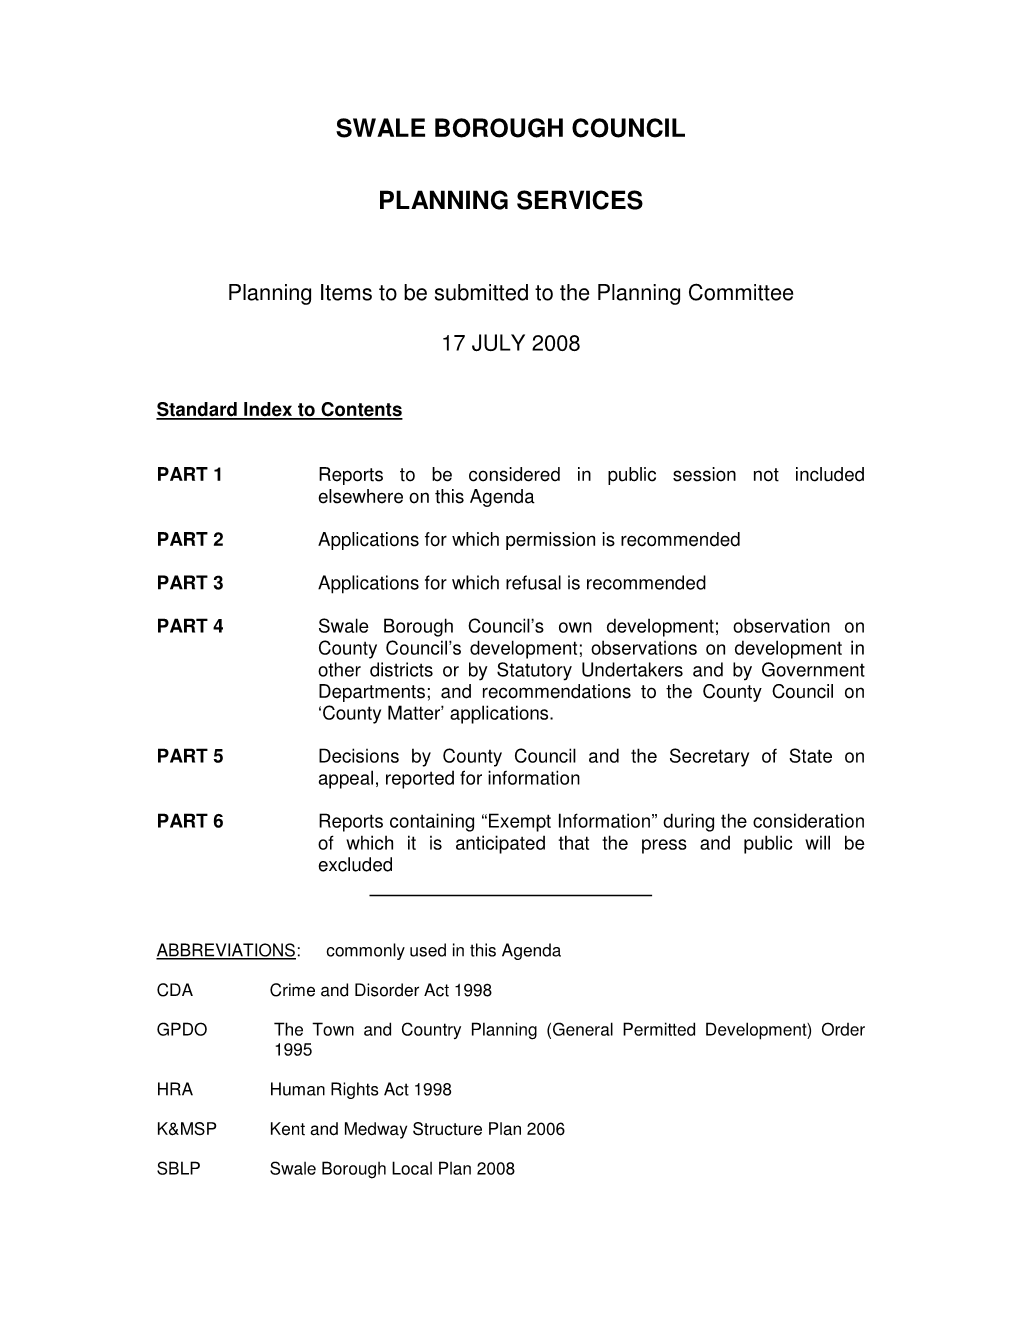 Swale Borough Council Planning Services